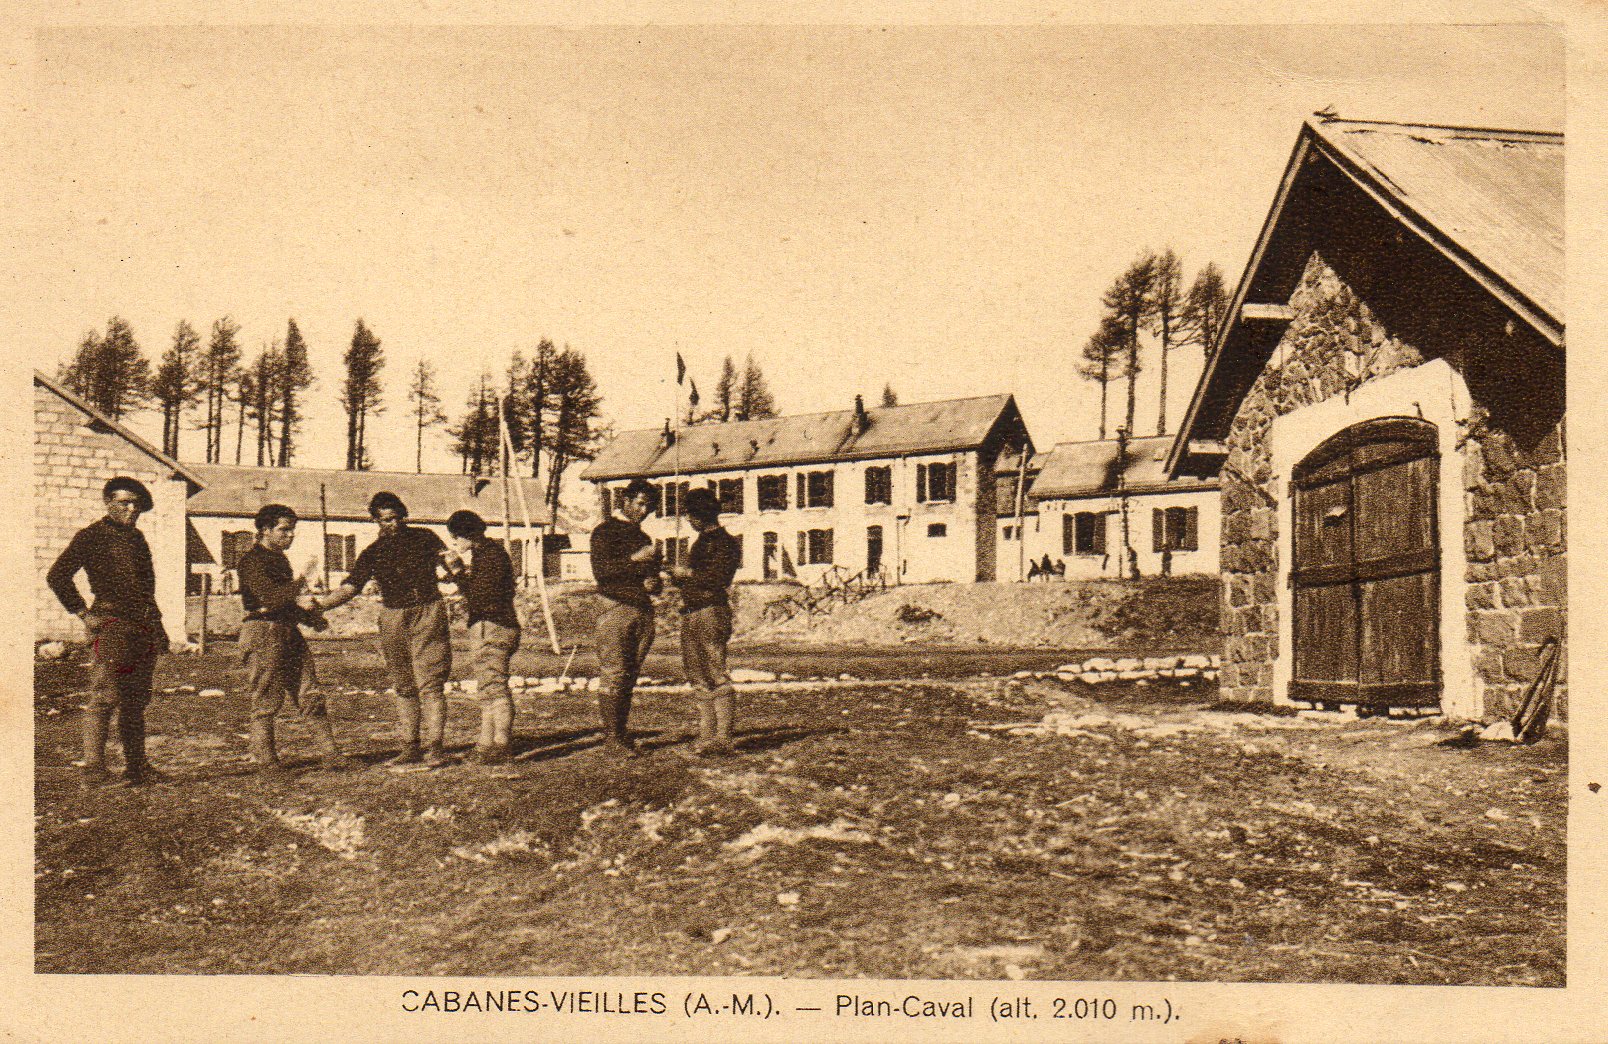 Ligne Maginot - PLAN CAVAL (Casernement) - Carte postale non datée